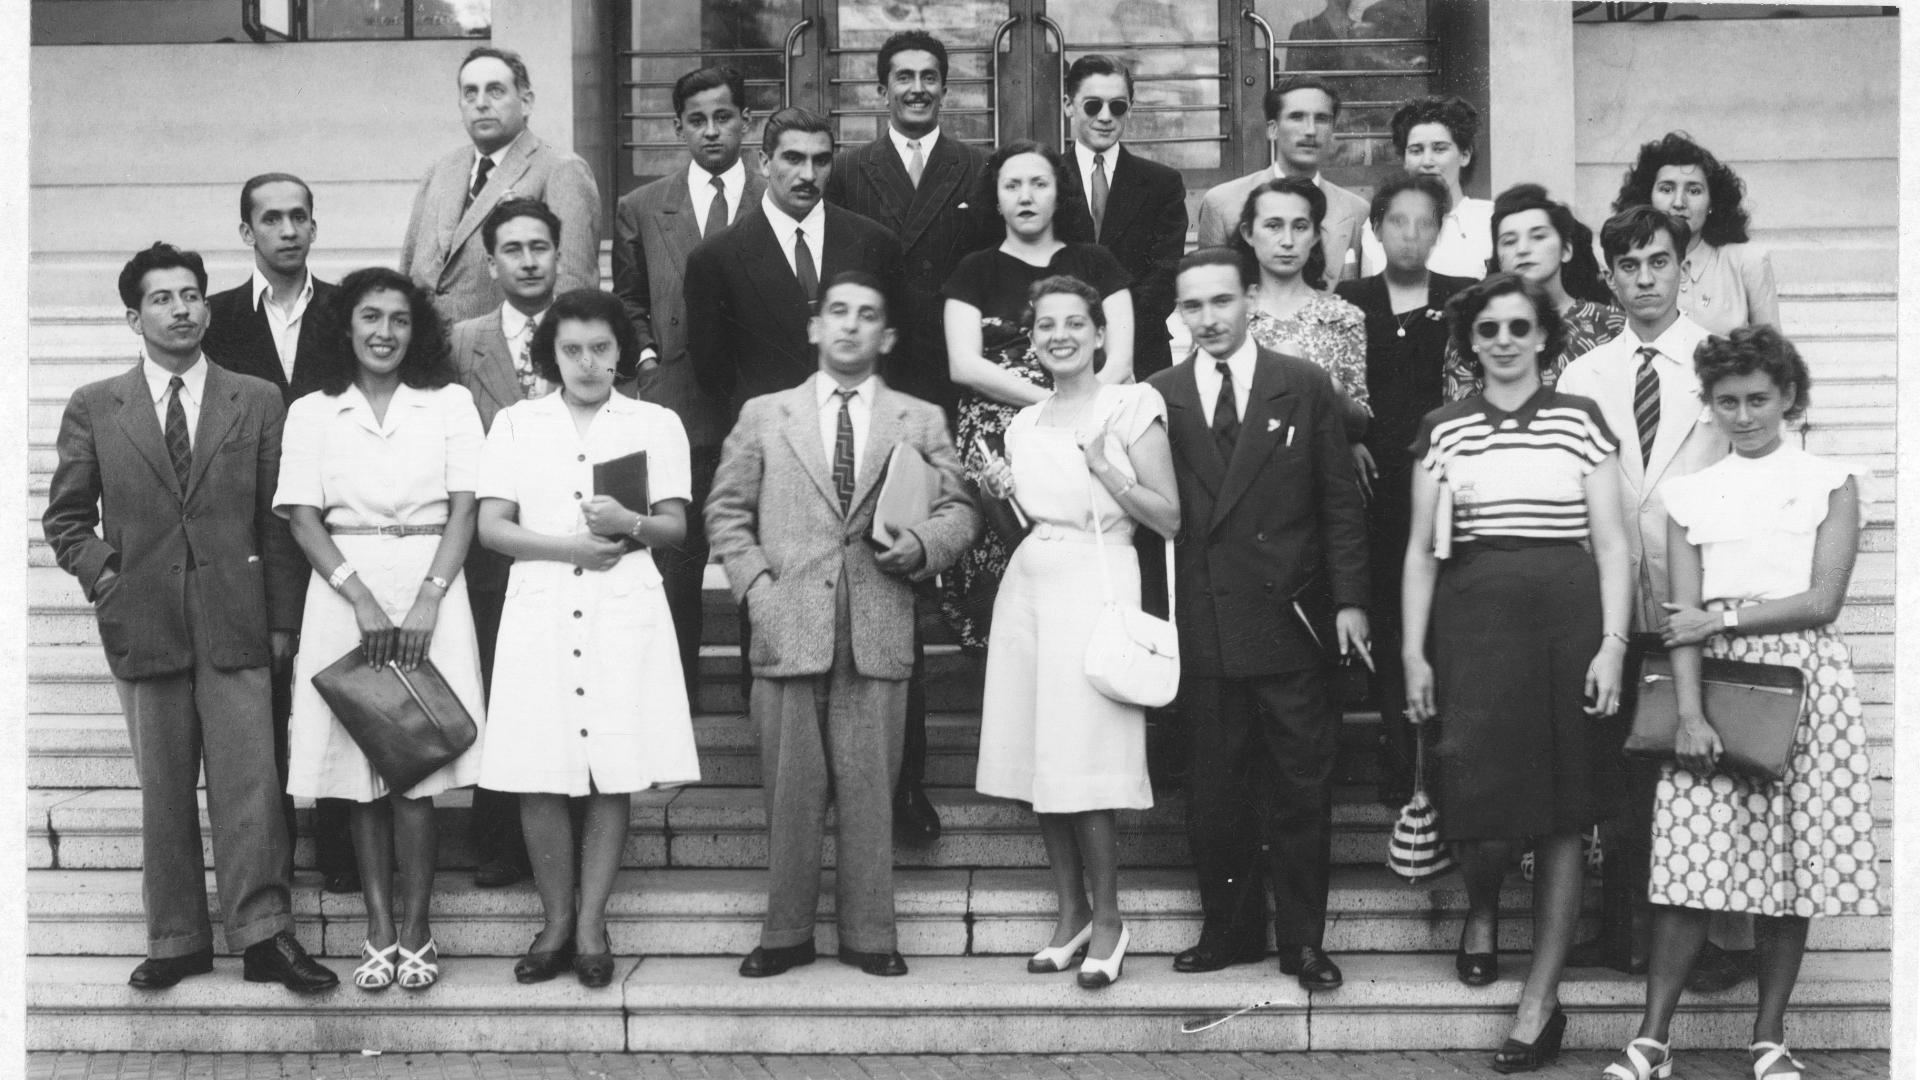 Grupo de profesoras y profesores en una escalera, foto en blanco y negro, circa década de los sesenta